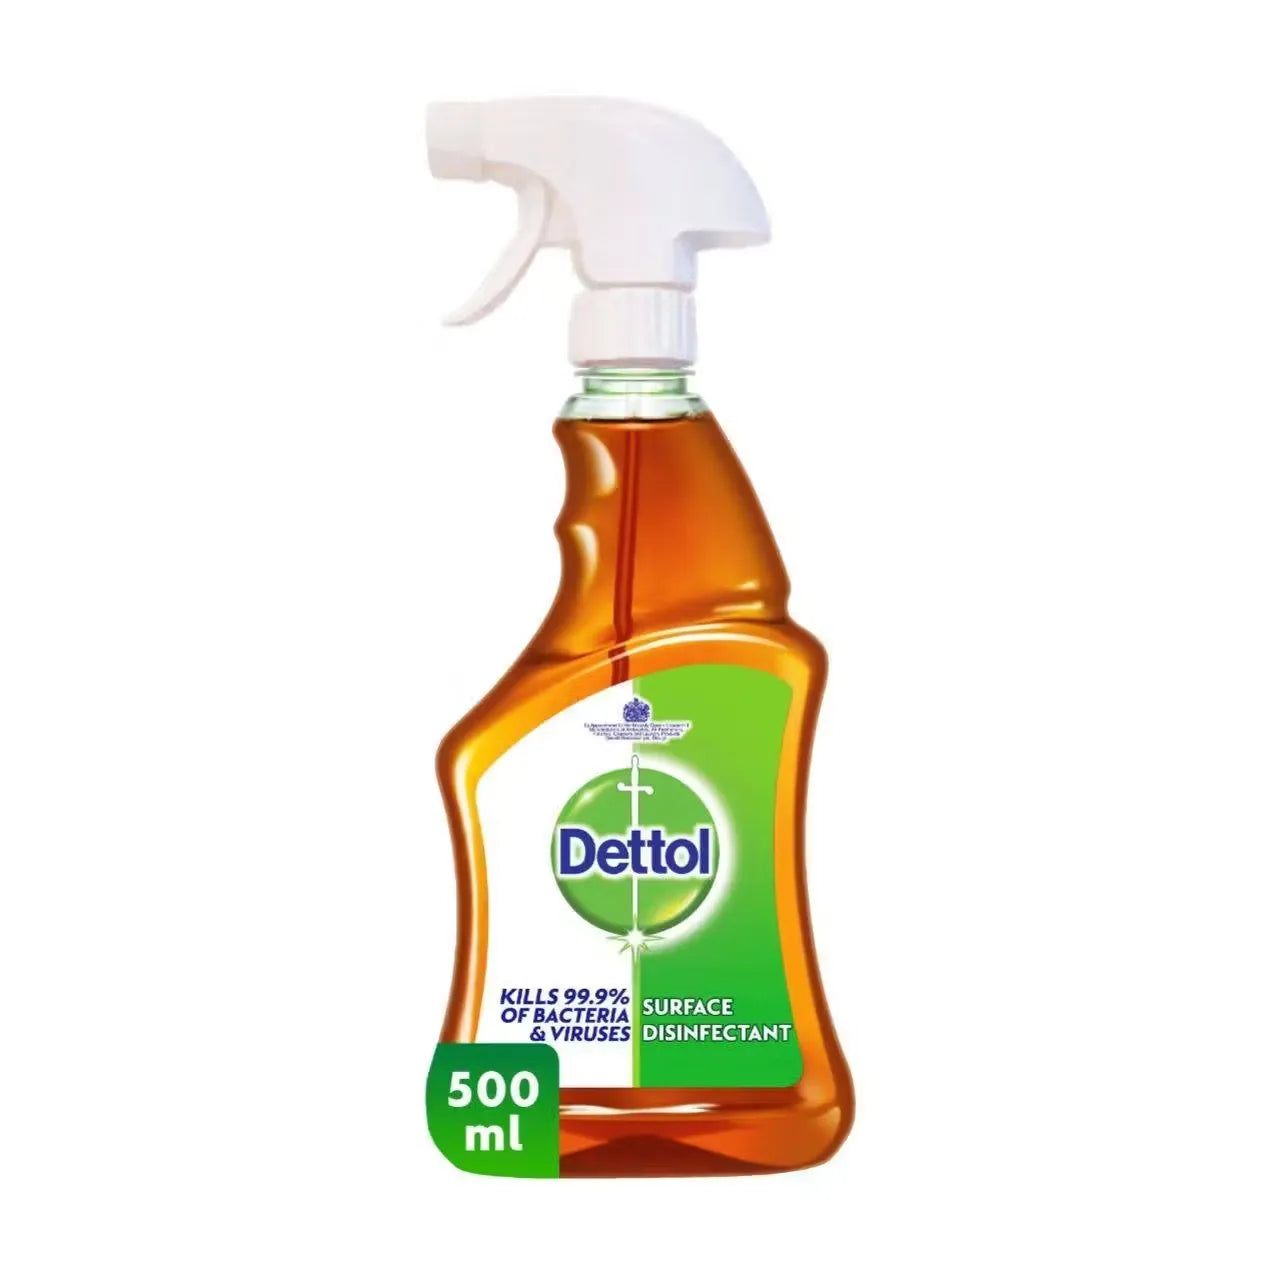 Dettol Self-Care Dettol surface disinfectant